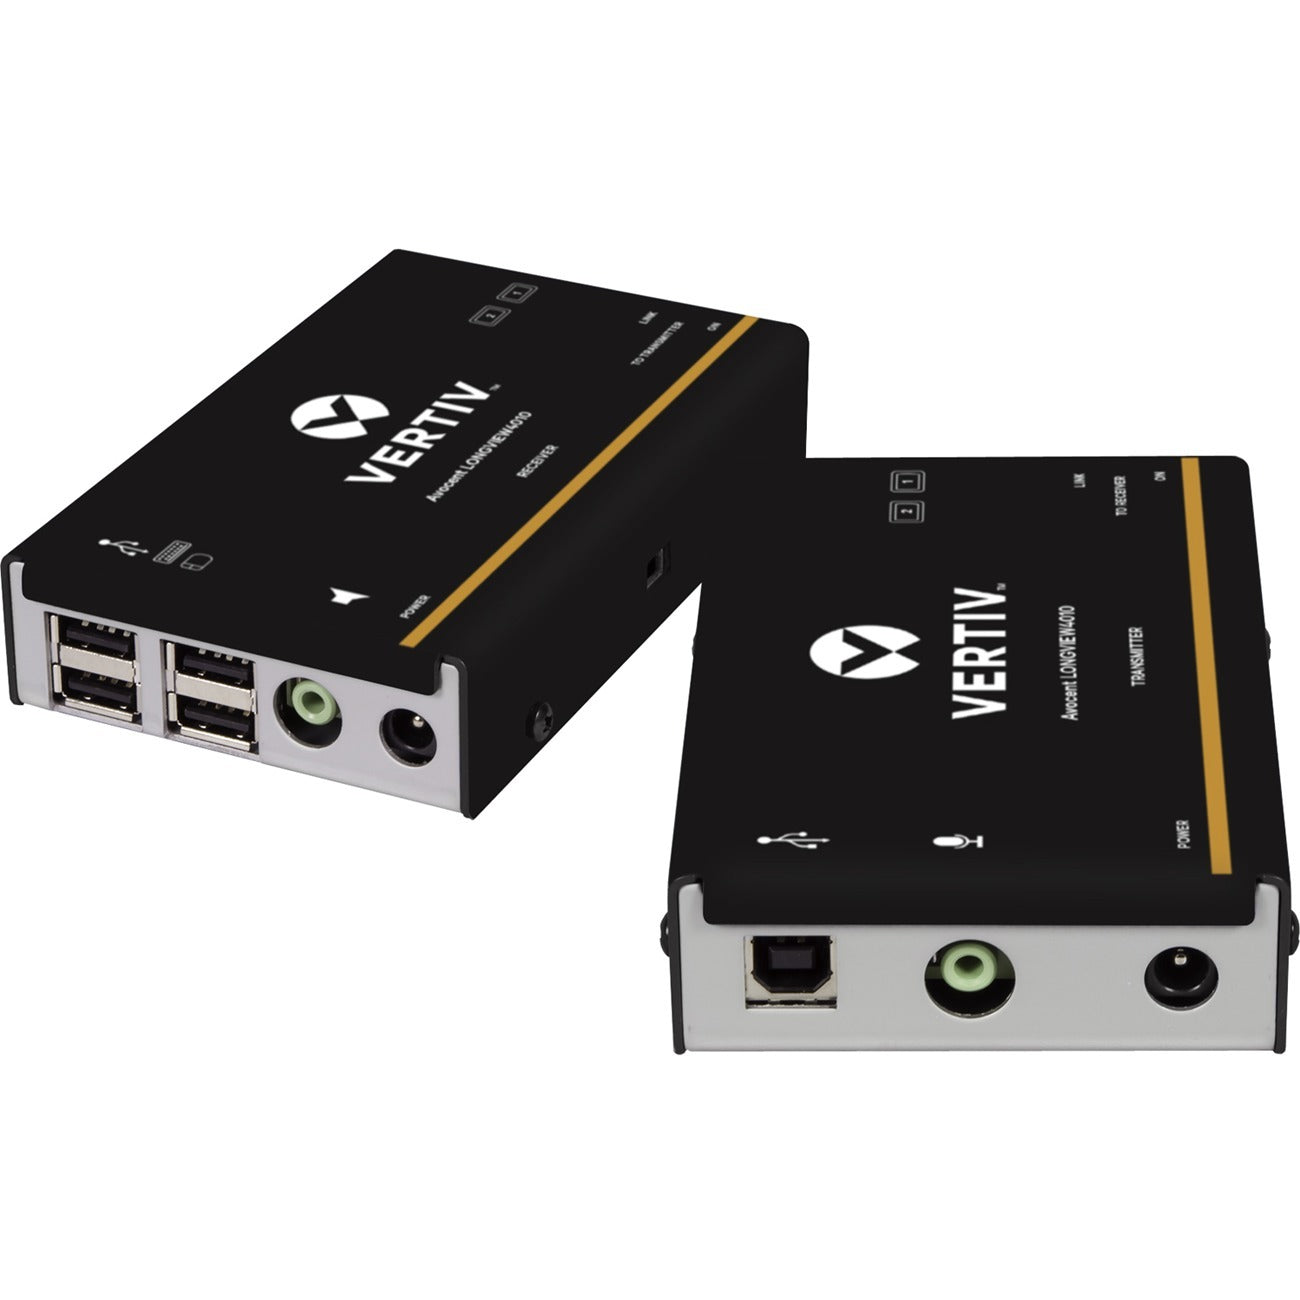 Avocent LV 4000 Series High Quality KVM Extender Kit with Receiver & Transmitter - LV4010P-001